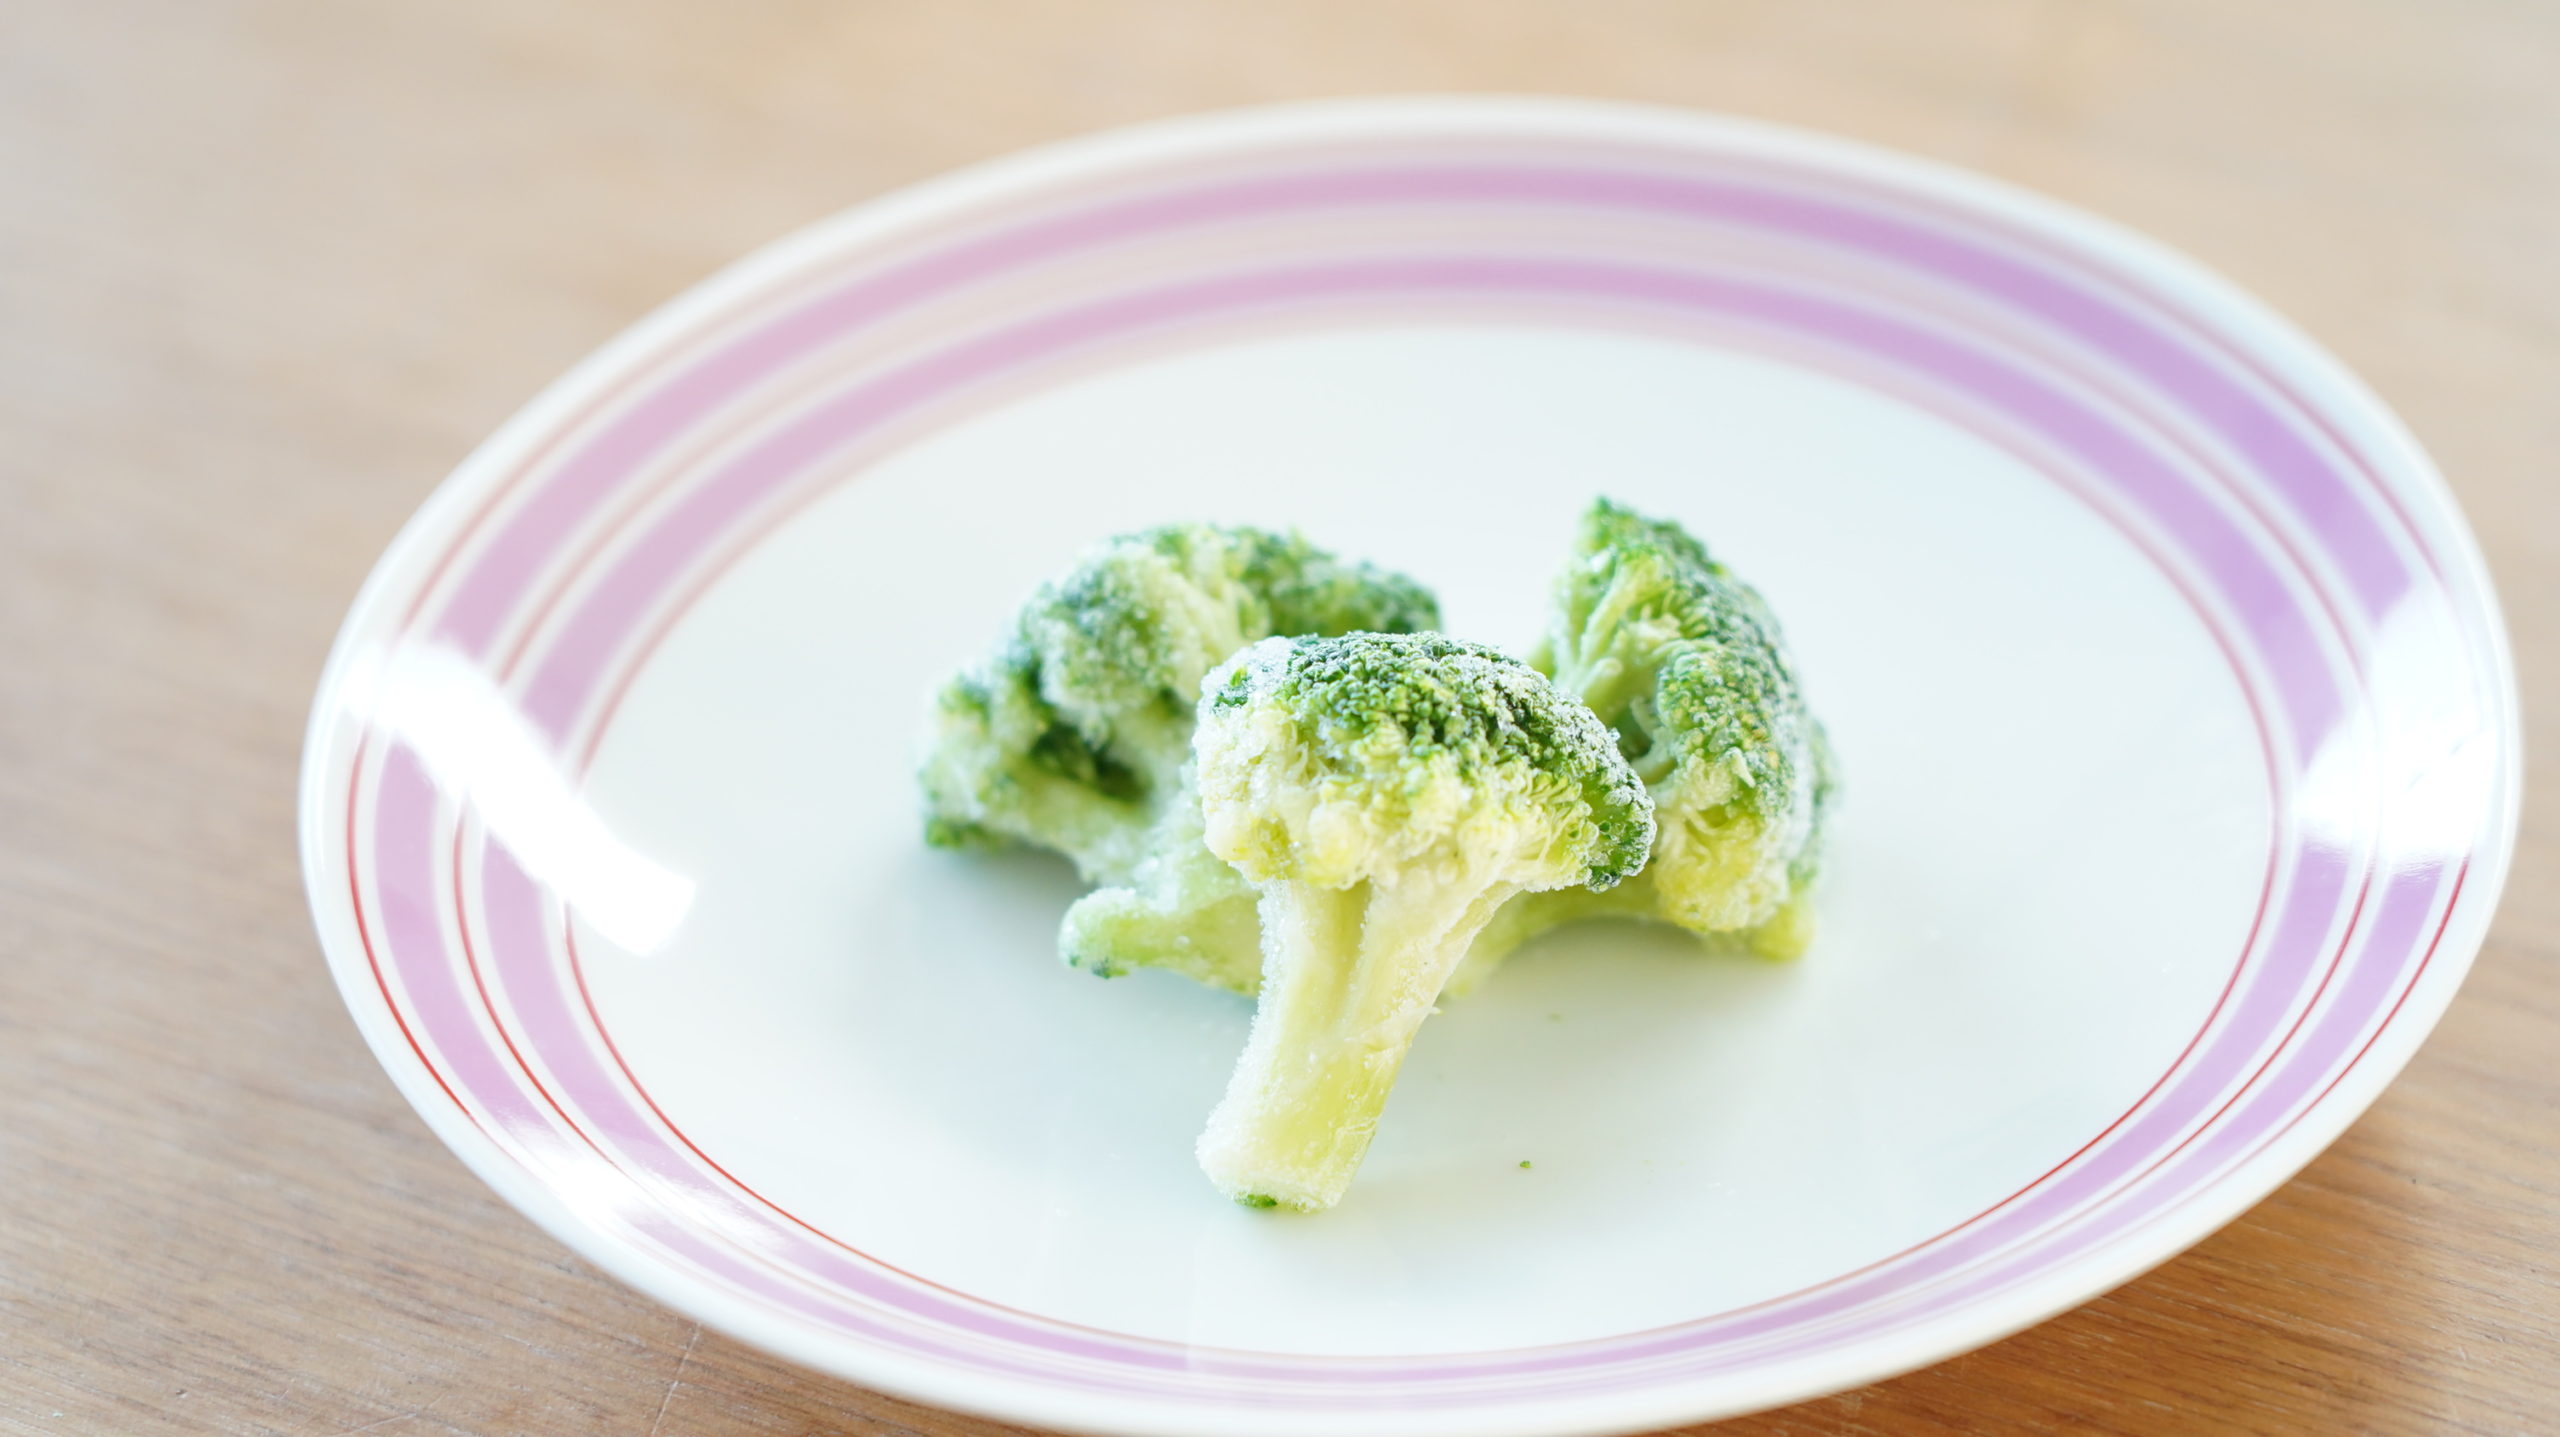 コストコの冷凍食品「ブロッコリー 100%ナチュラル」色鮮やかな様子の写真